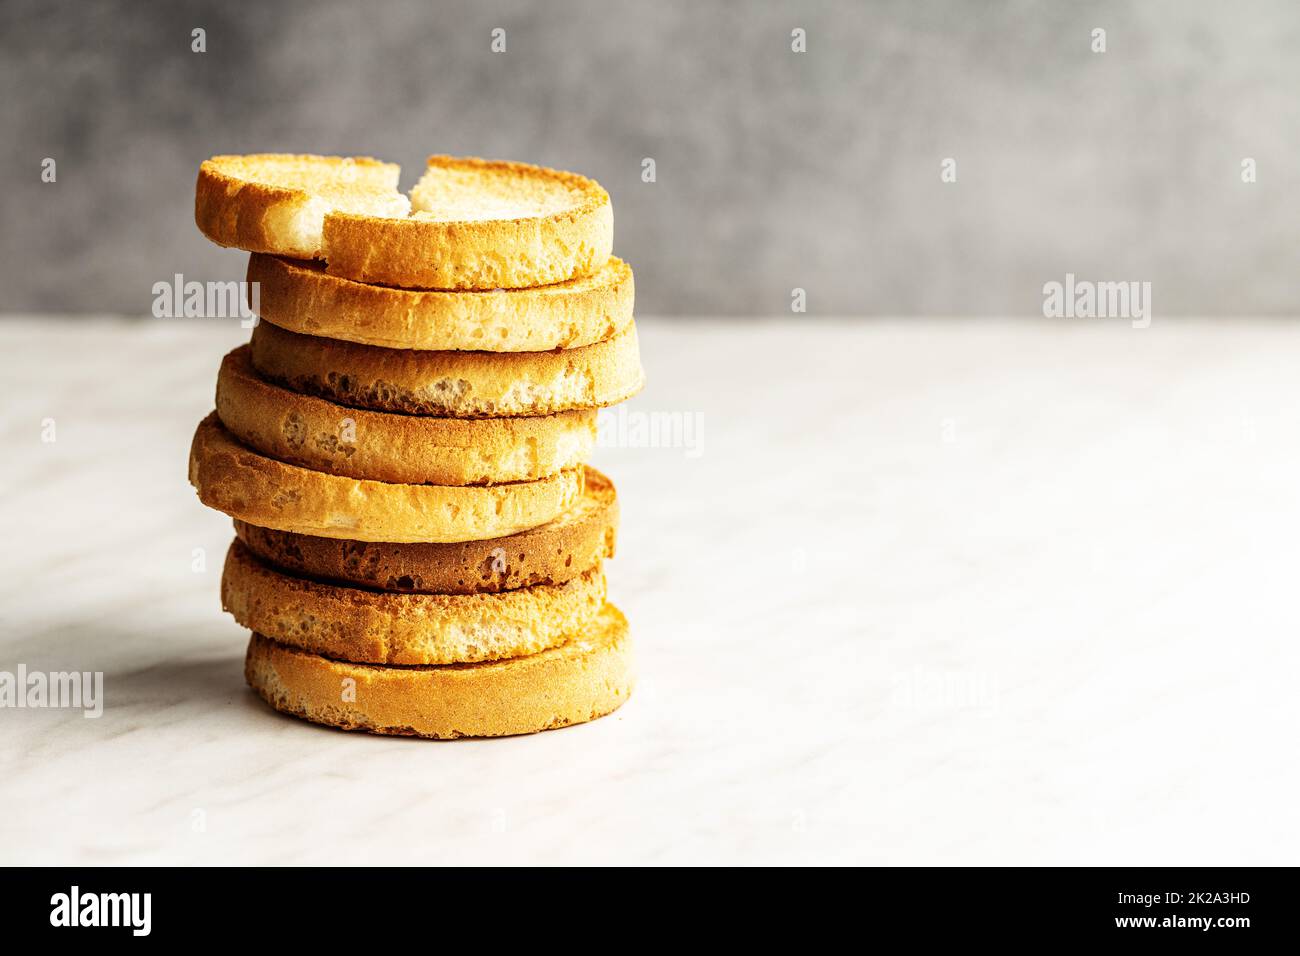 Pane dietetico di fette biscottate. Biscotti croccanti. Foto Stock